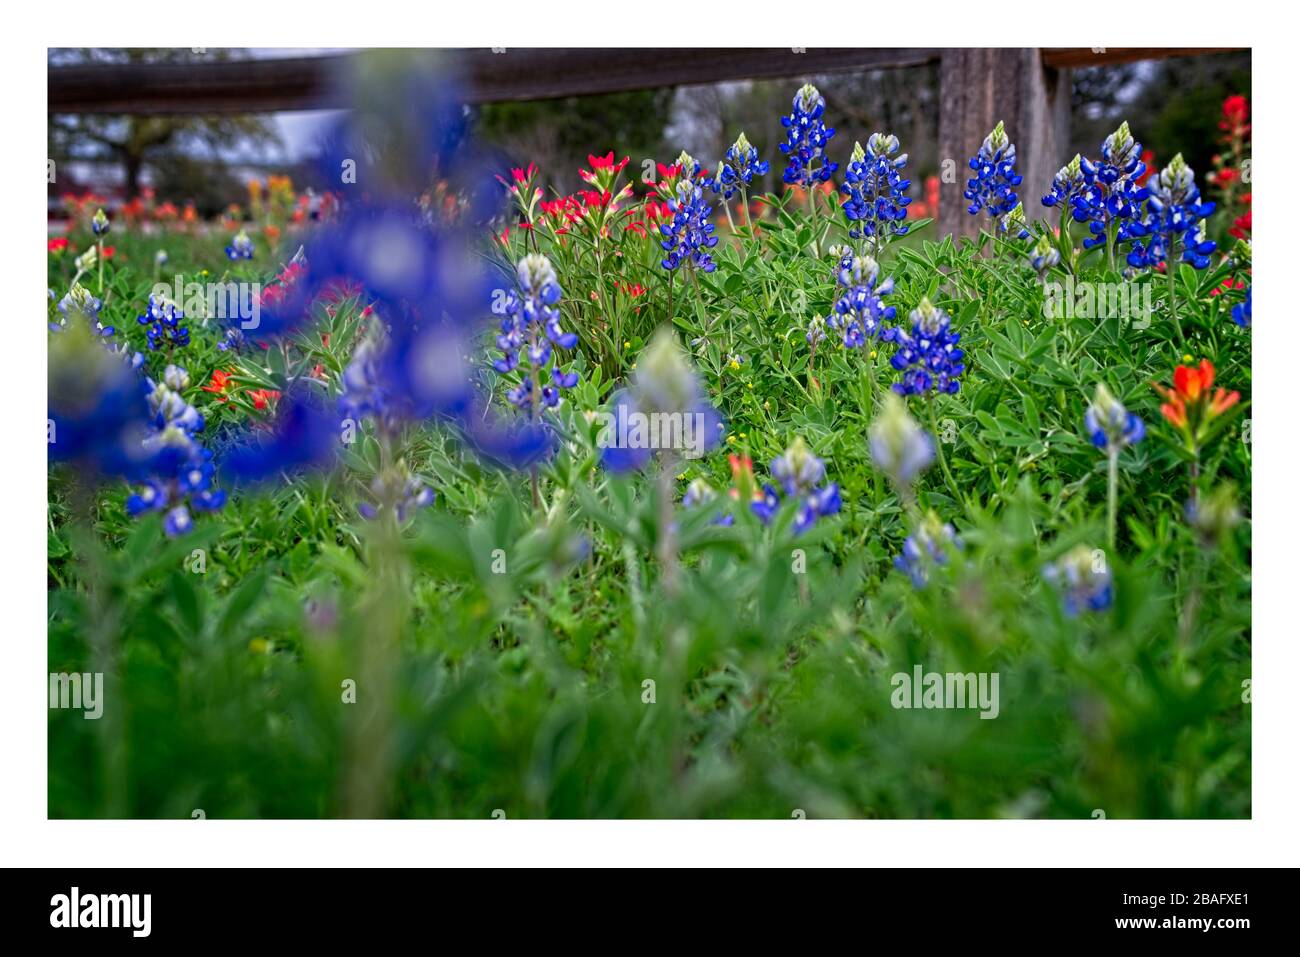 Texas Bluebonnet, pennello indiano fiori selvatici da strada rurale con recinto di spartitura. Foto Stock